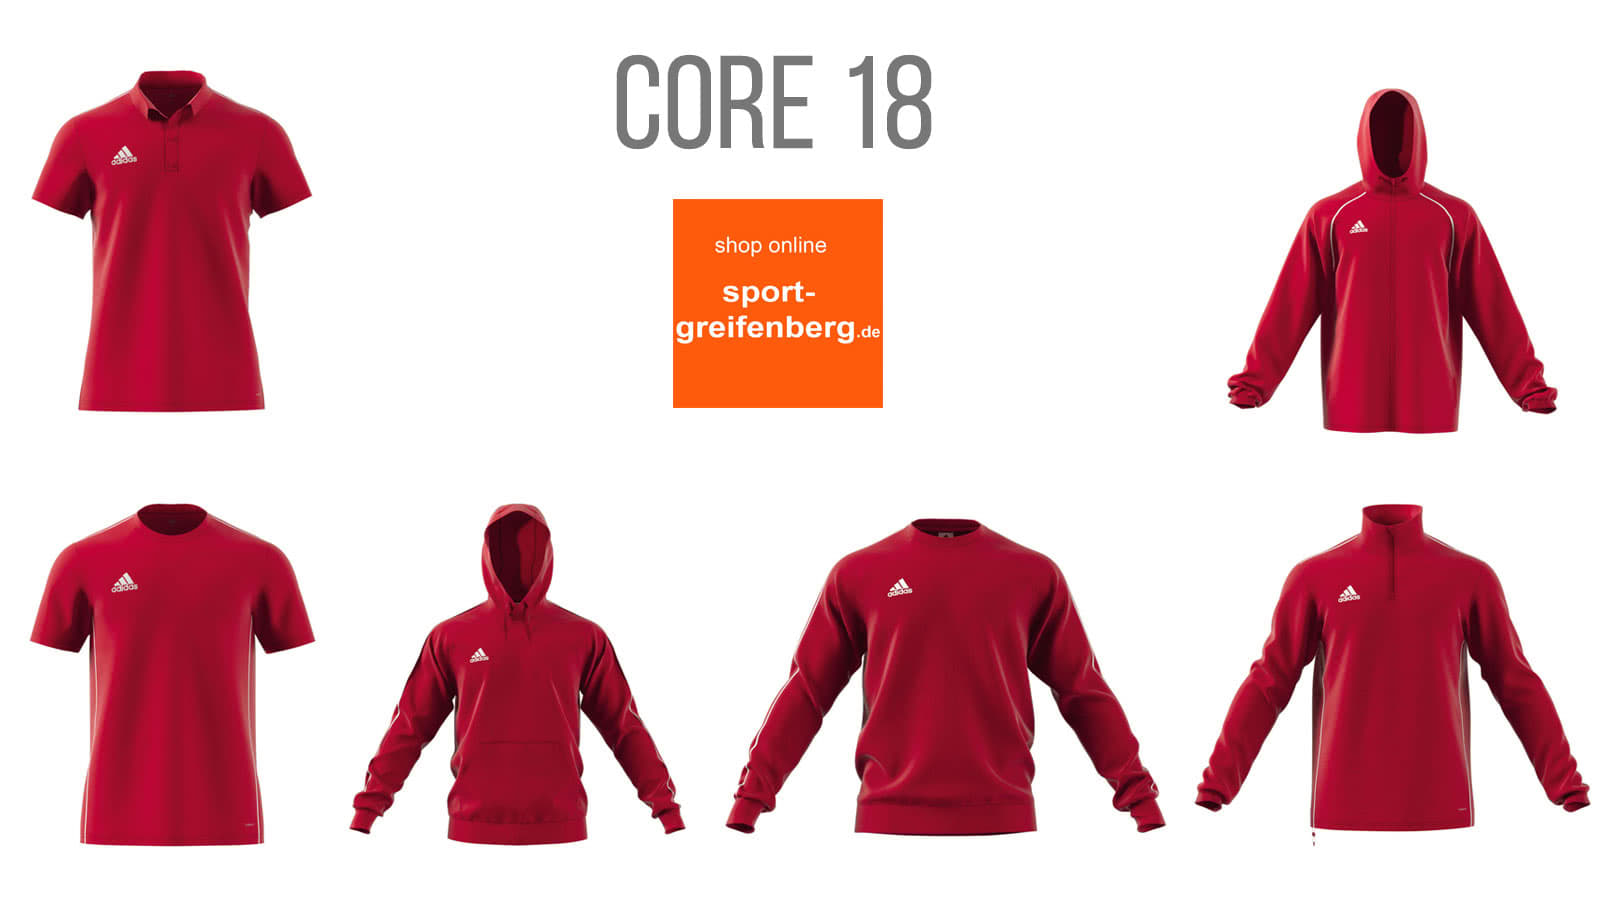 Die Adidas Core 18 Sportbekleidung und Teamline